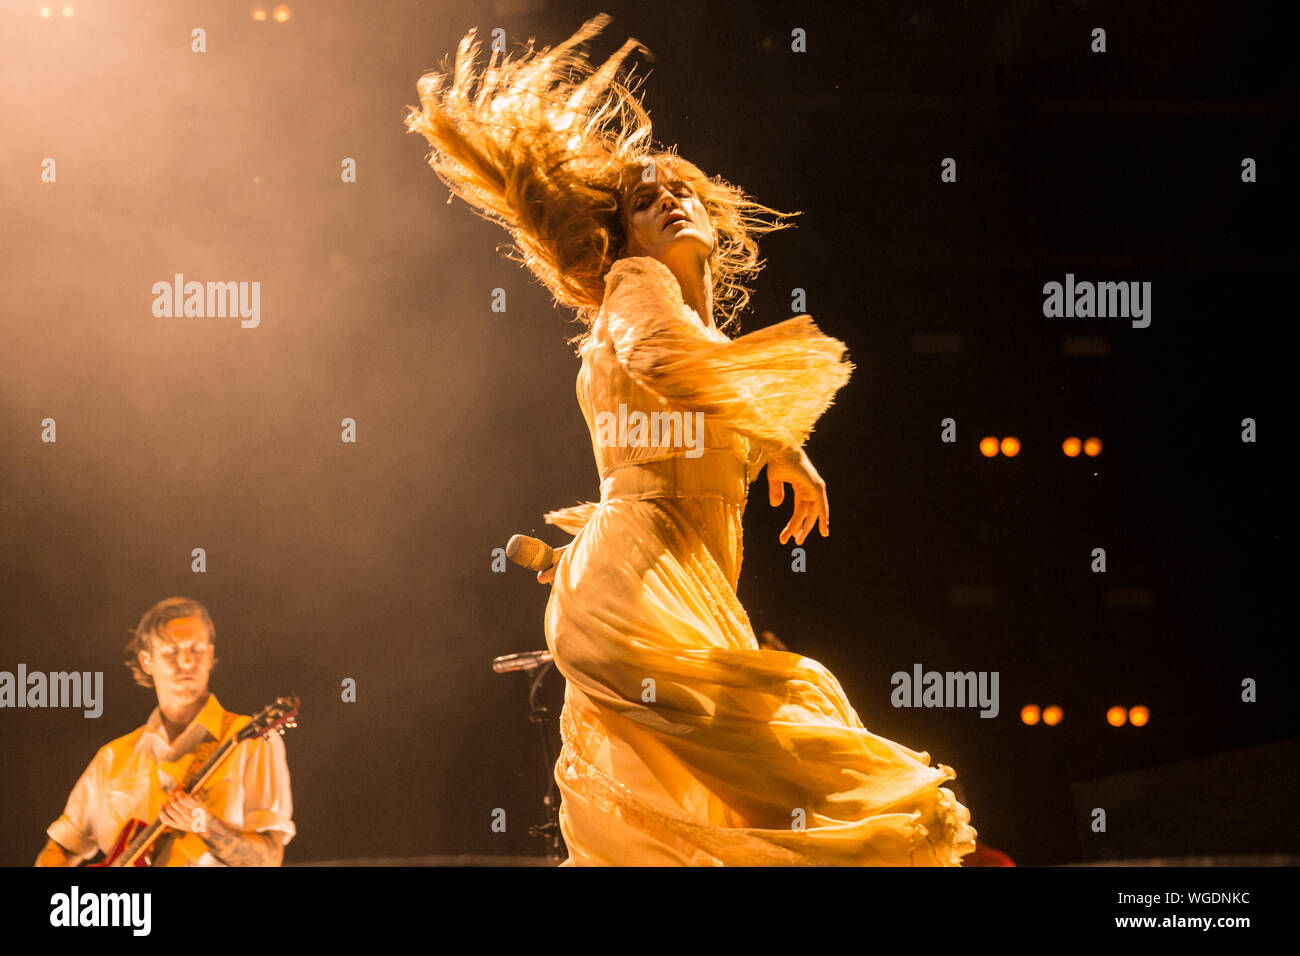 Florence and The Machine Live @ Milano Rocks 30/09/2019 - Foto di Giorgia De Dato Stock Photo